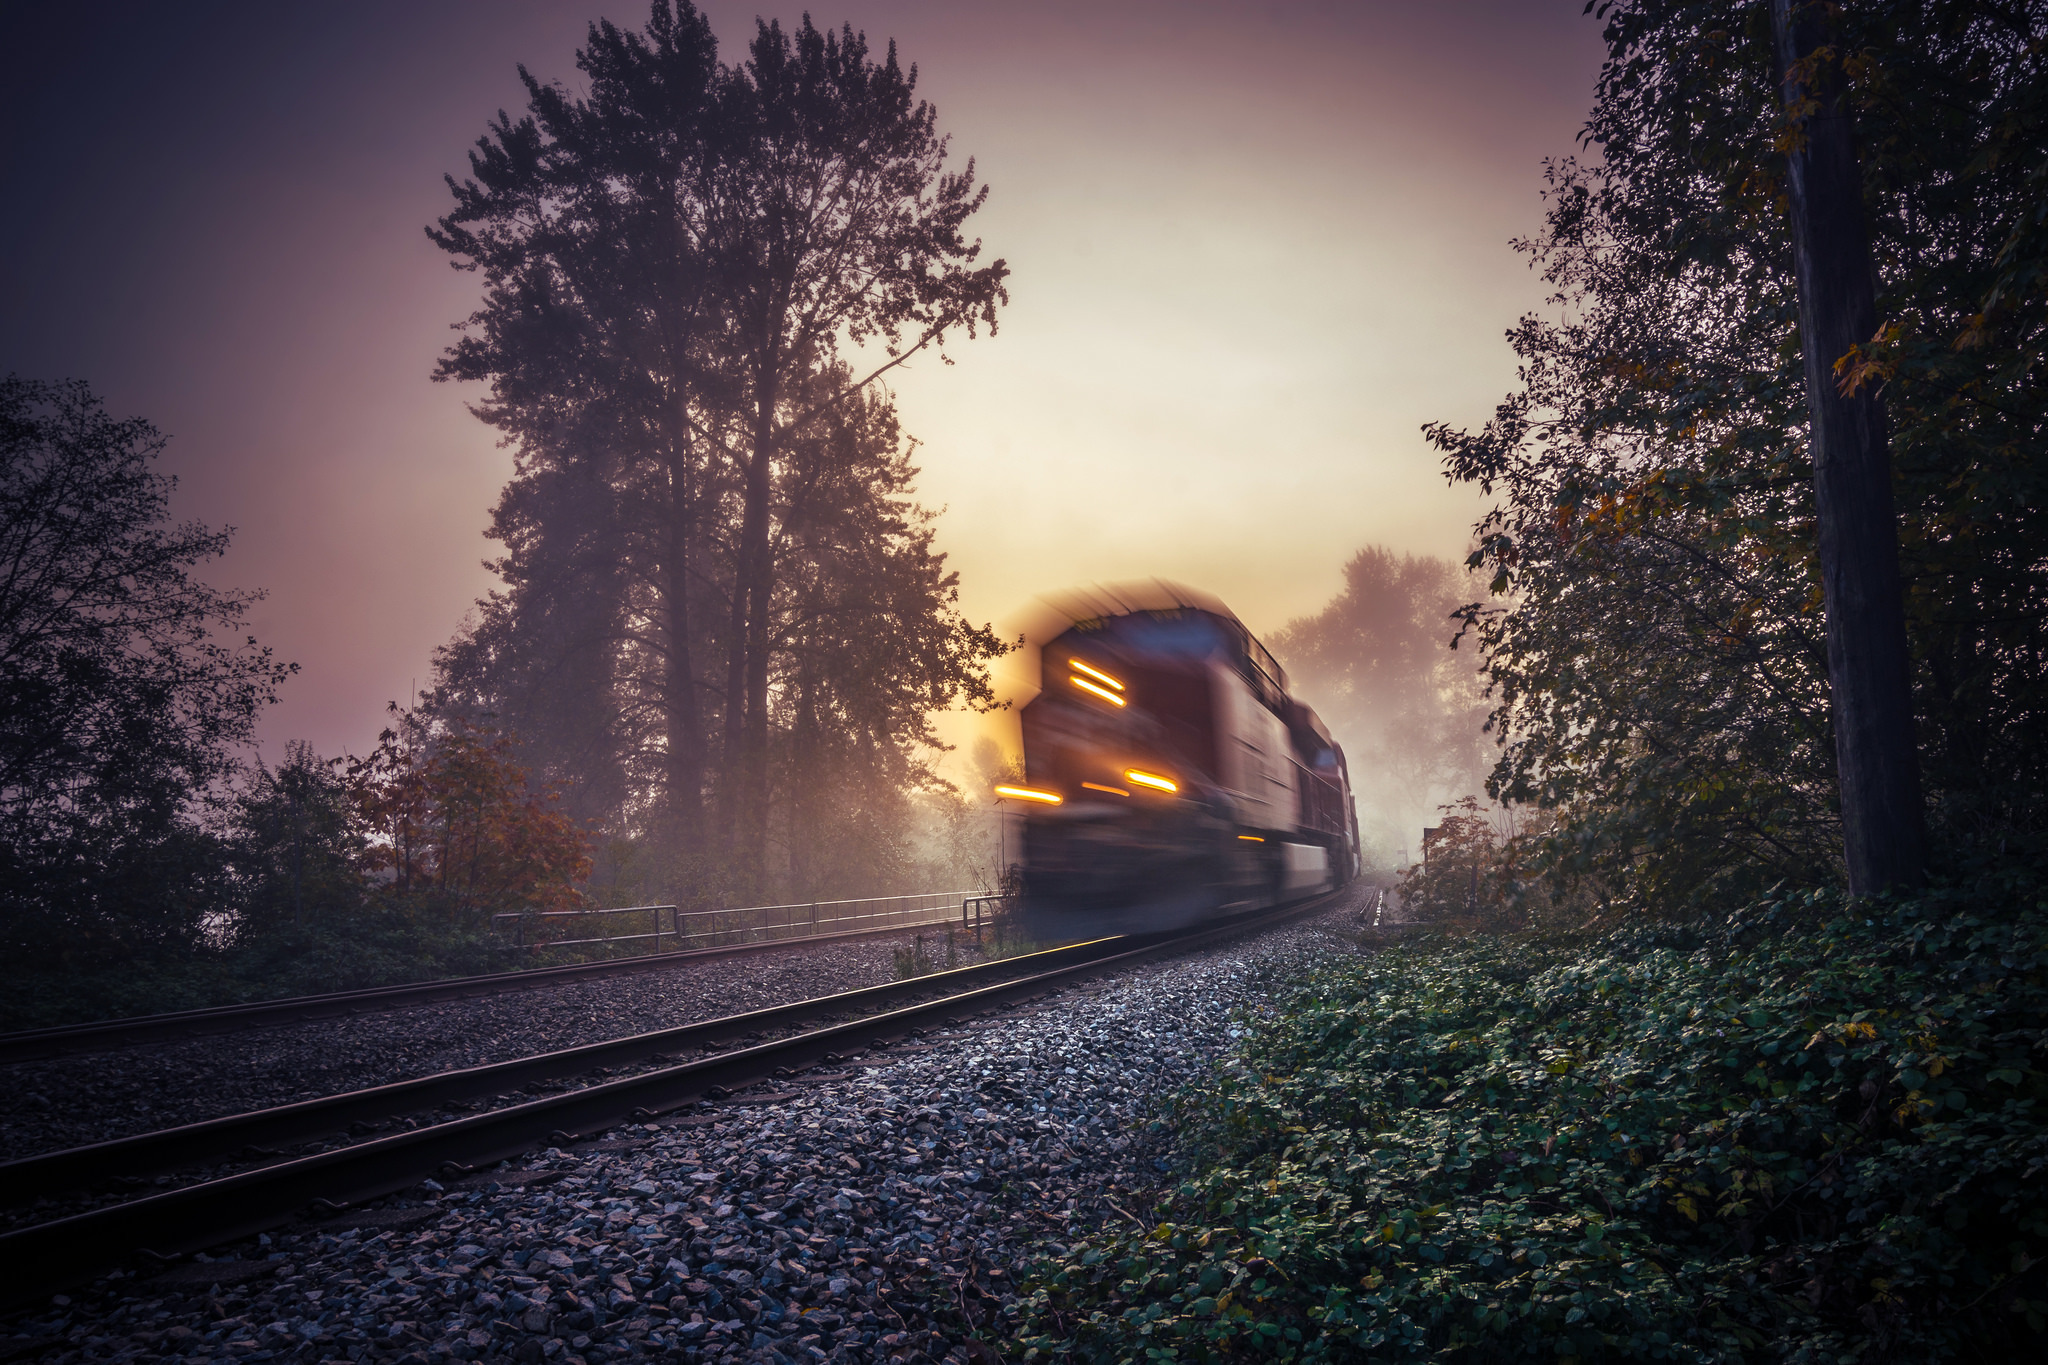 Поезд едет туда. Уходящий поезд. Пейзаж с железной дорогой. Железная дорога туман. Поезд в тумане.